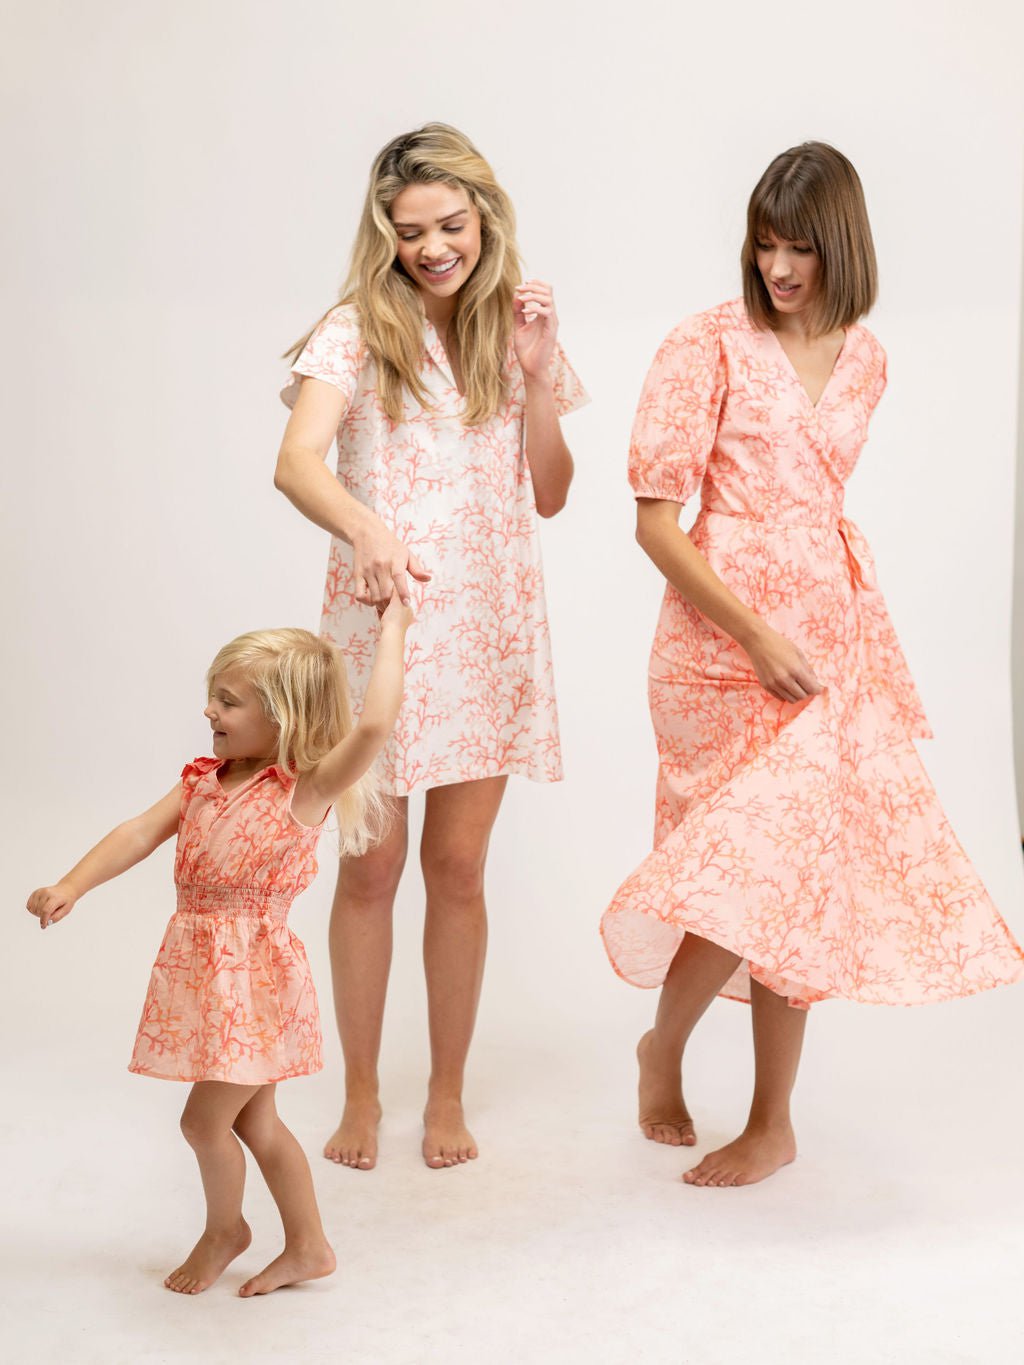 Beau & Ro Dress 3/4 Y SAMPLE | The Julia Kids Dress | Coral Pink on Pink | 3/4 Y